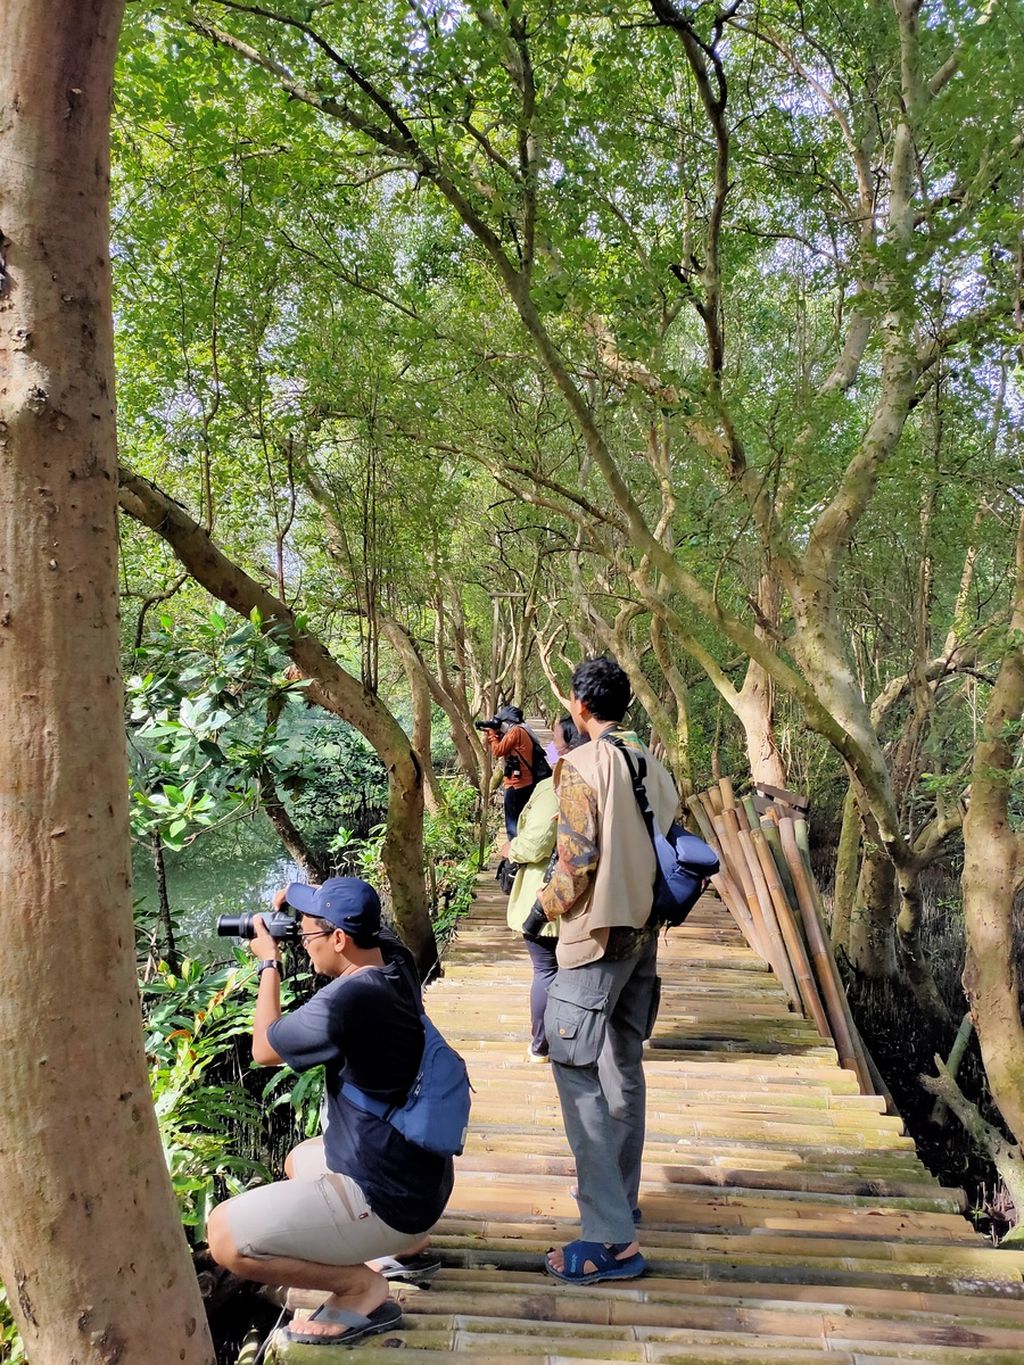 Biodiversity Warriors (BW) Kehati menggelar kegiatan tahunan, Asian Waterbird Census atau sensus burung air Asia di Taman Wisata Alam Mangrove Angke Kapuk, Jakarta pada Minggu (15/1/2023). 